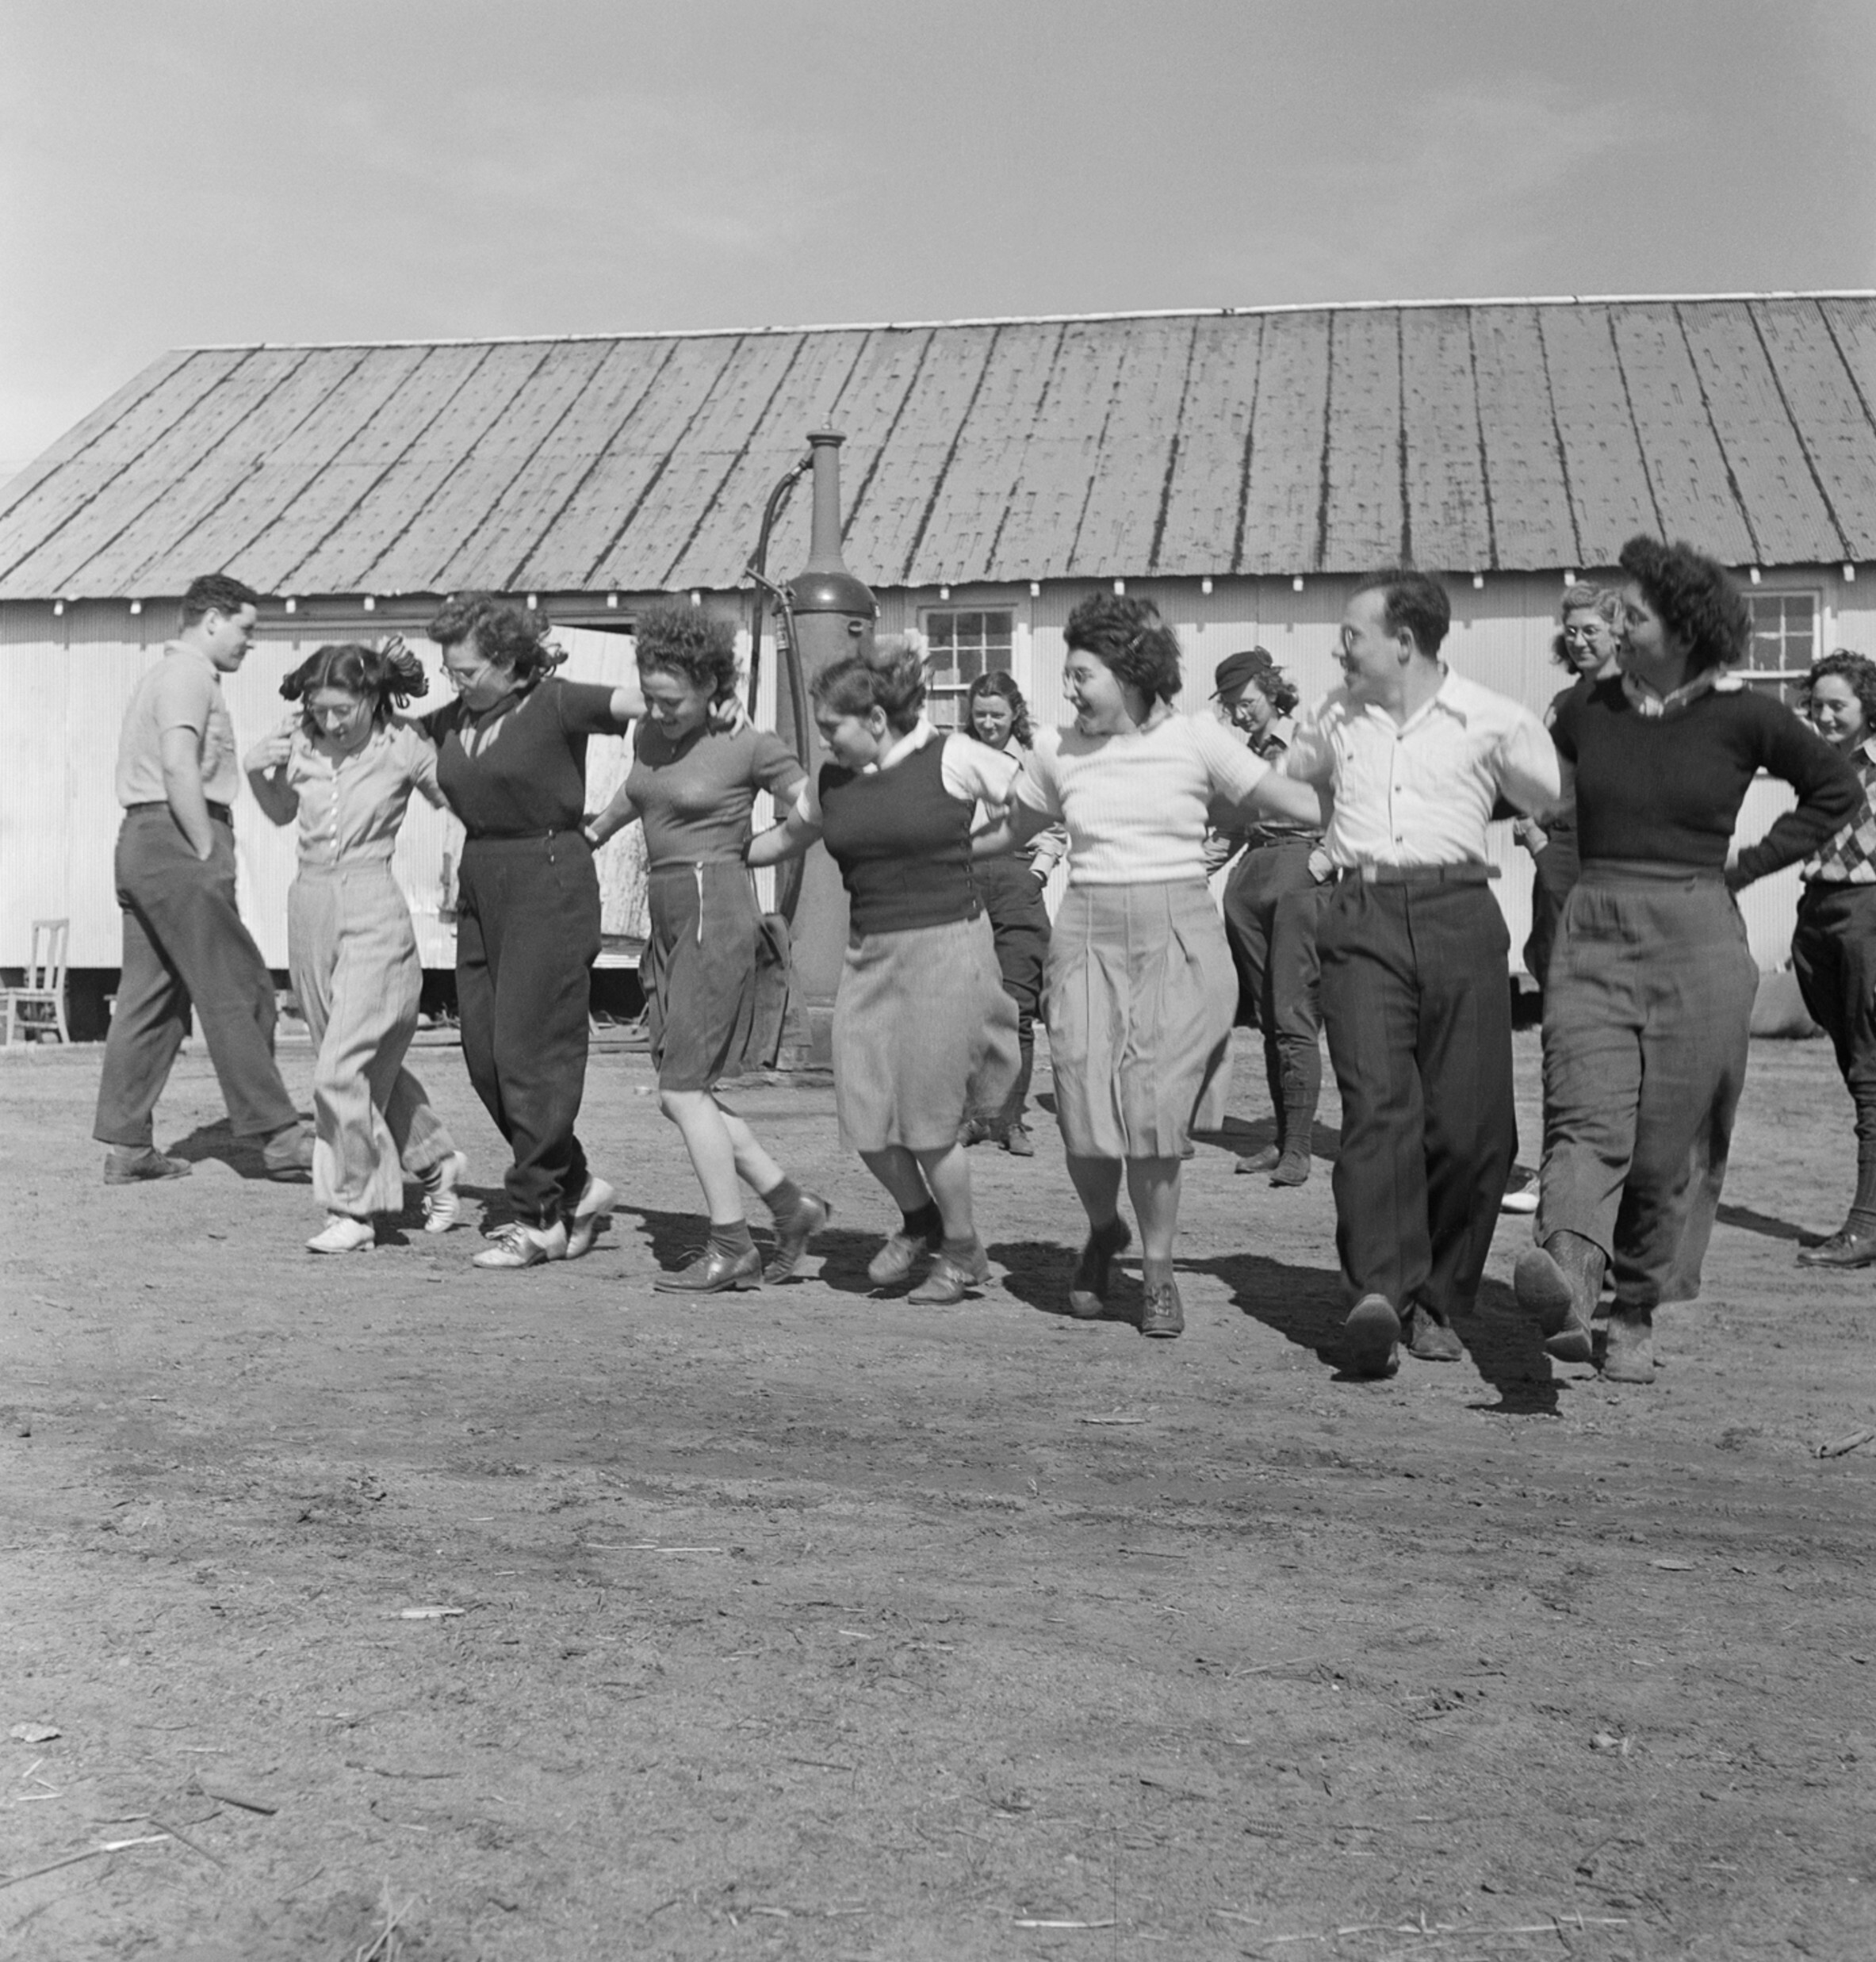 Еврейская молодежь танцует Черкесию, жанр танца с Кавказа, принятый еврейскими пионерами и принесенный в Палестину, Werkdorp Nieuwesluis, Wieringermeer, Нидерланды, ок. 1938 год. Фотограф Роман Вишняк